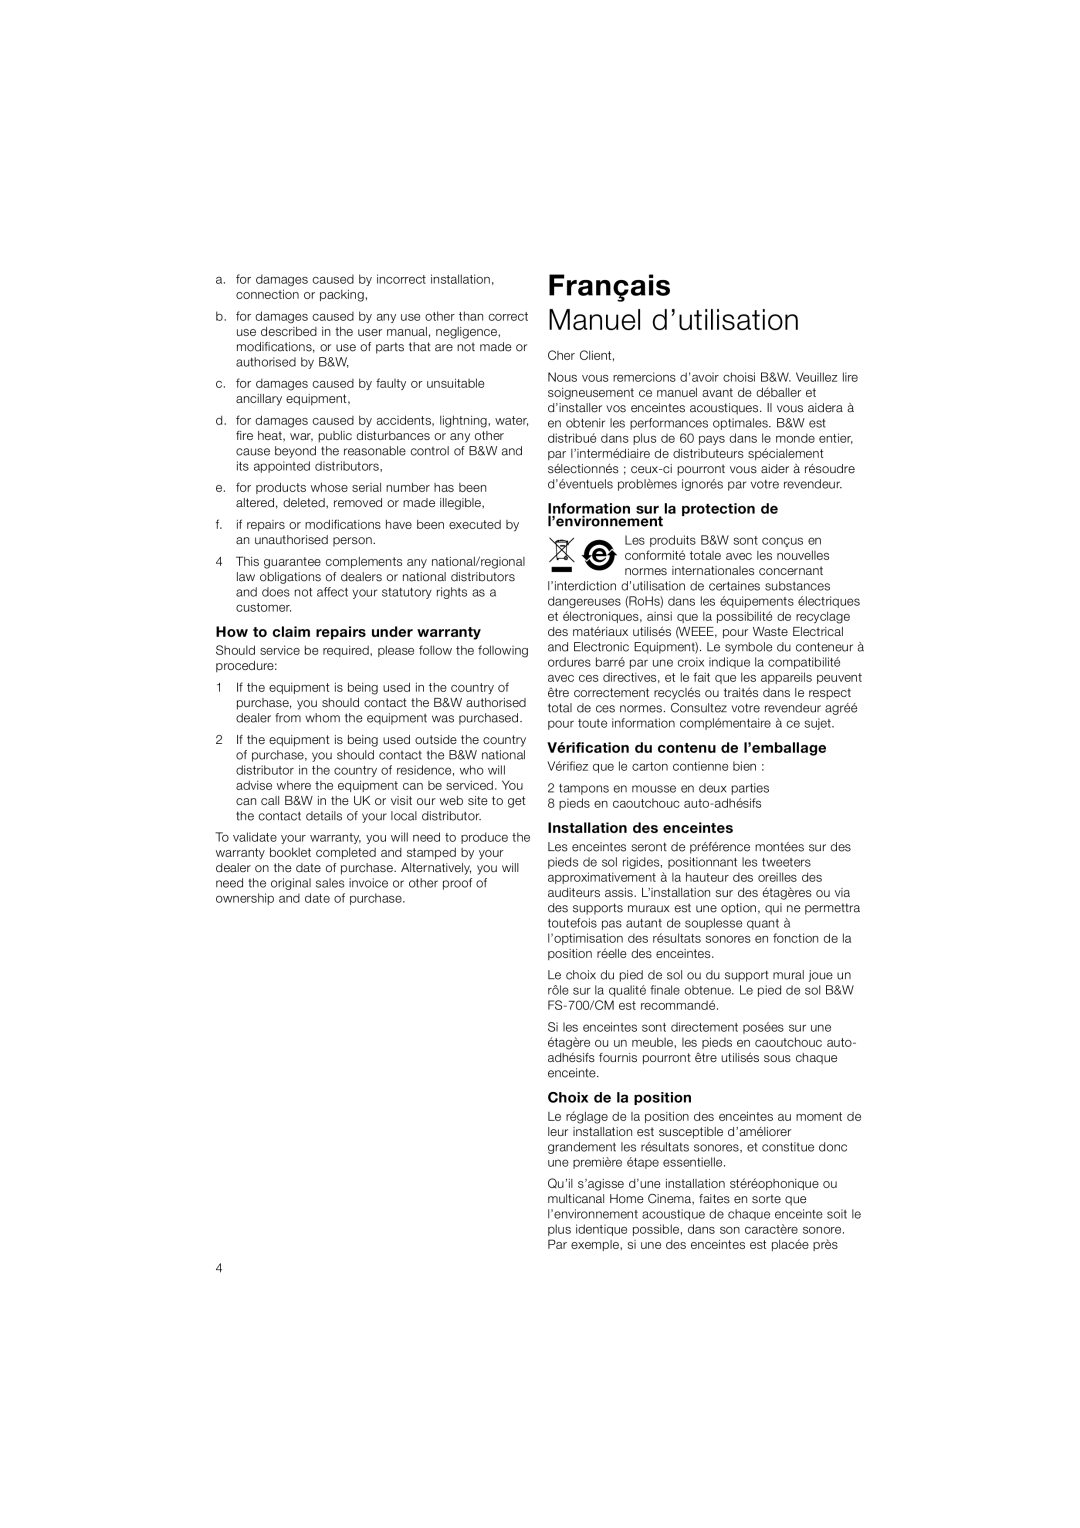 Bowers & Wilkins CM5 Français, Manuel d’utilisation, How to claim repairs under warranty, Installation des enceintes 